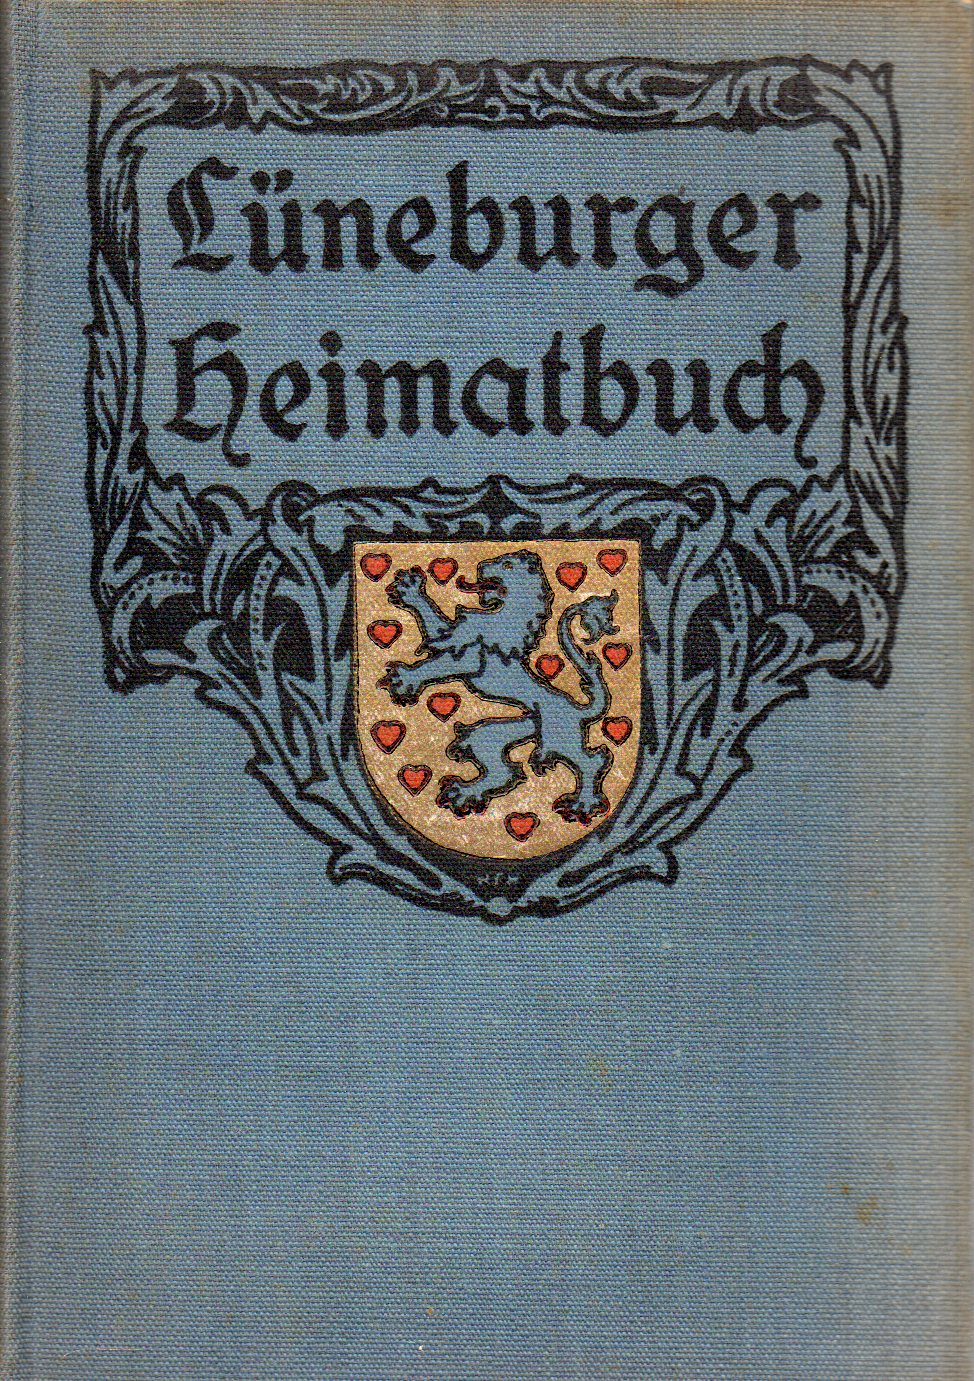 Benecke,Otto und Theodor  Lüneburger Heimatbuch II. Volk und geistiges Leben 